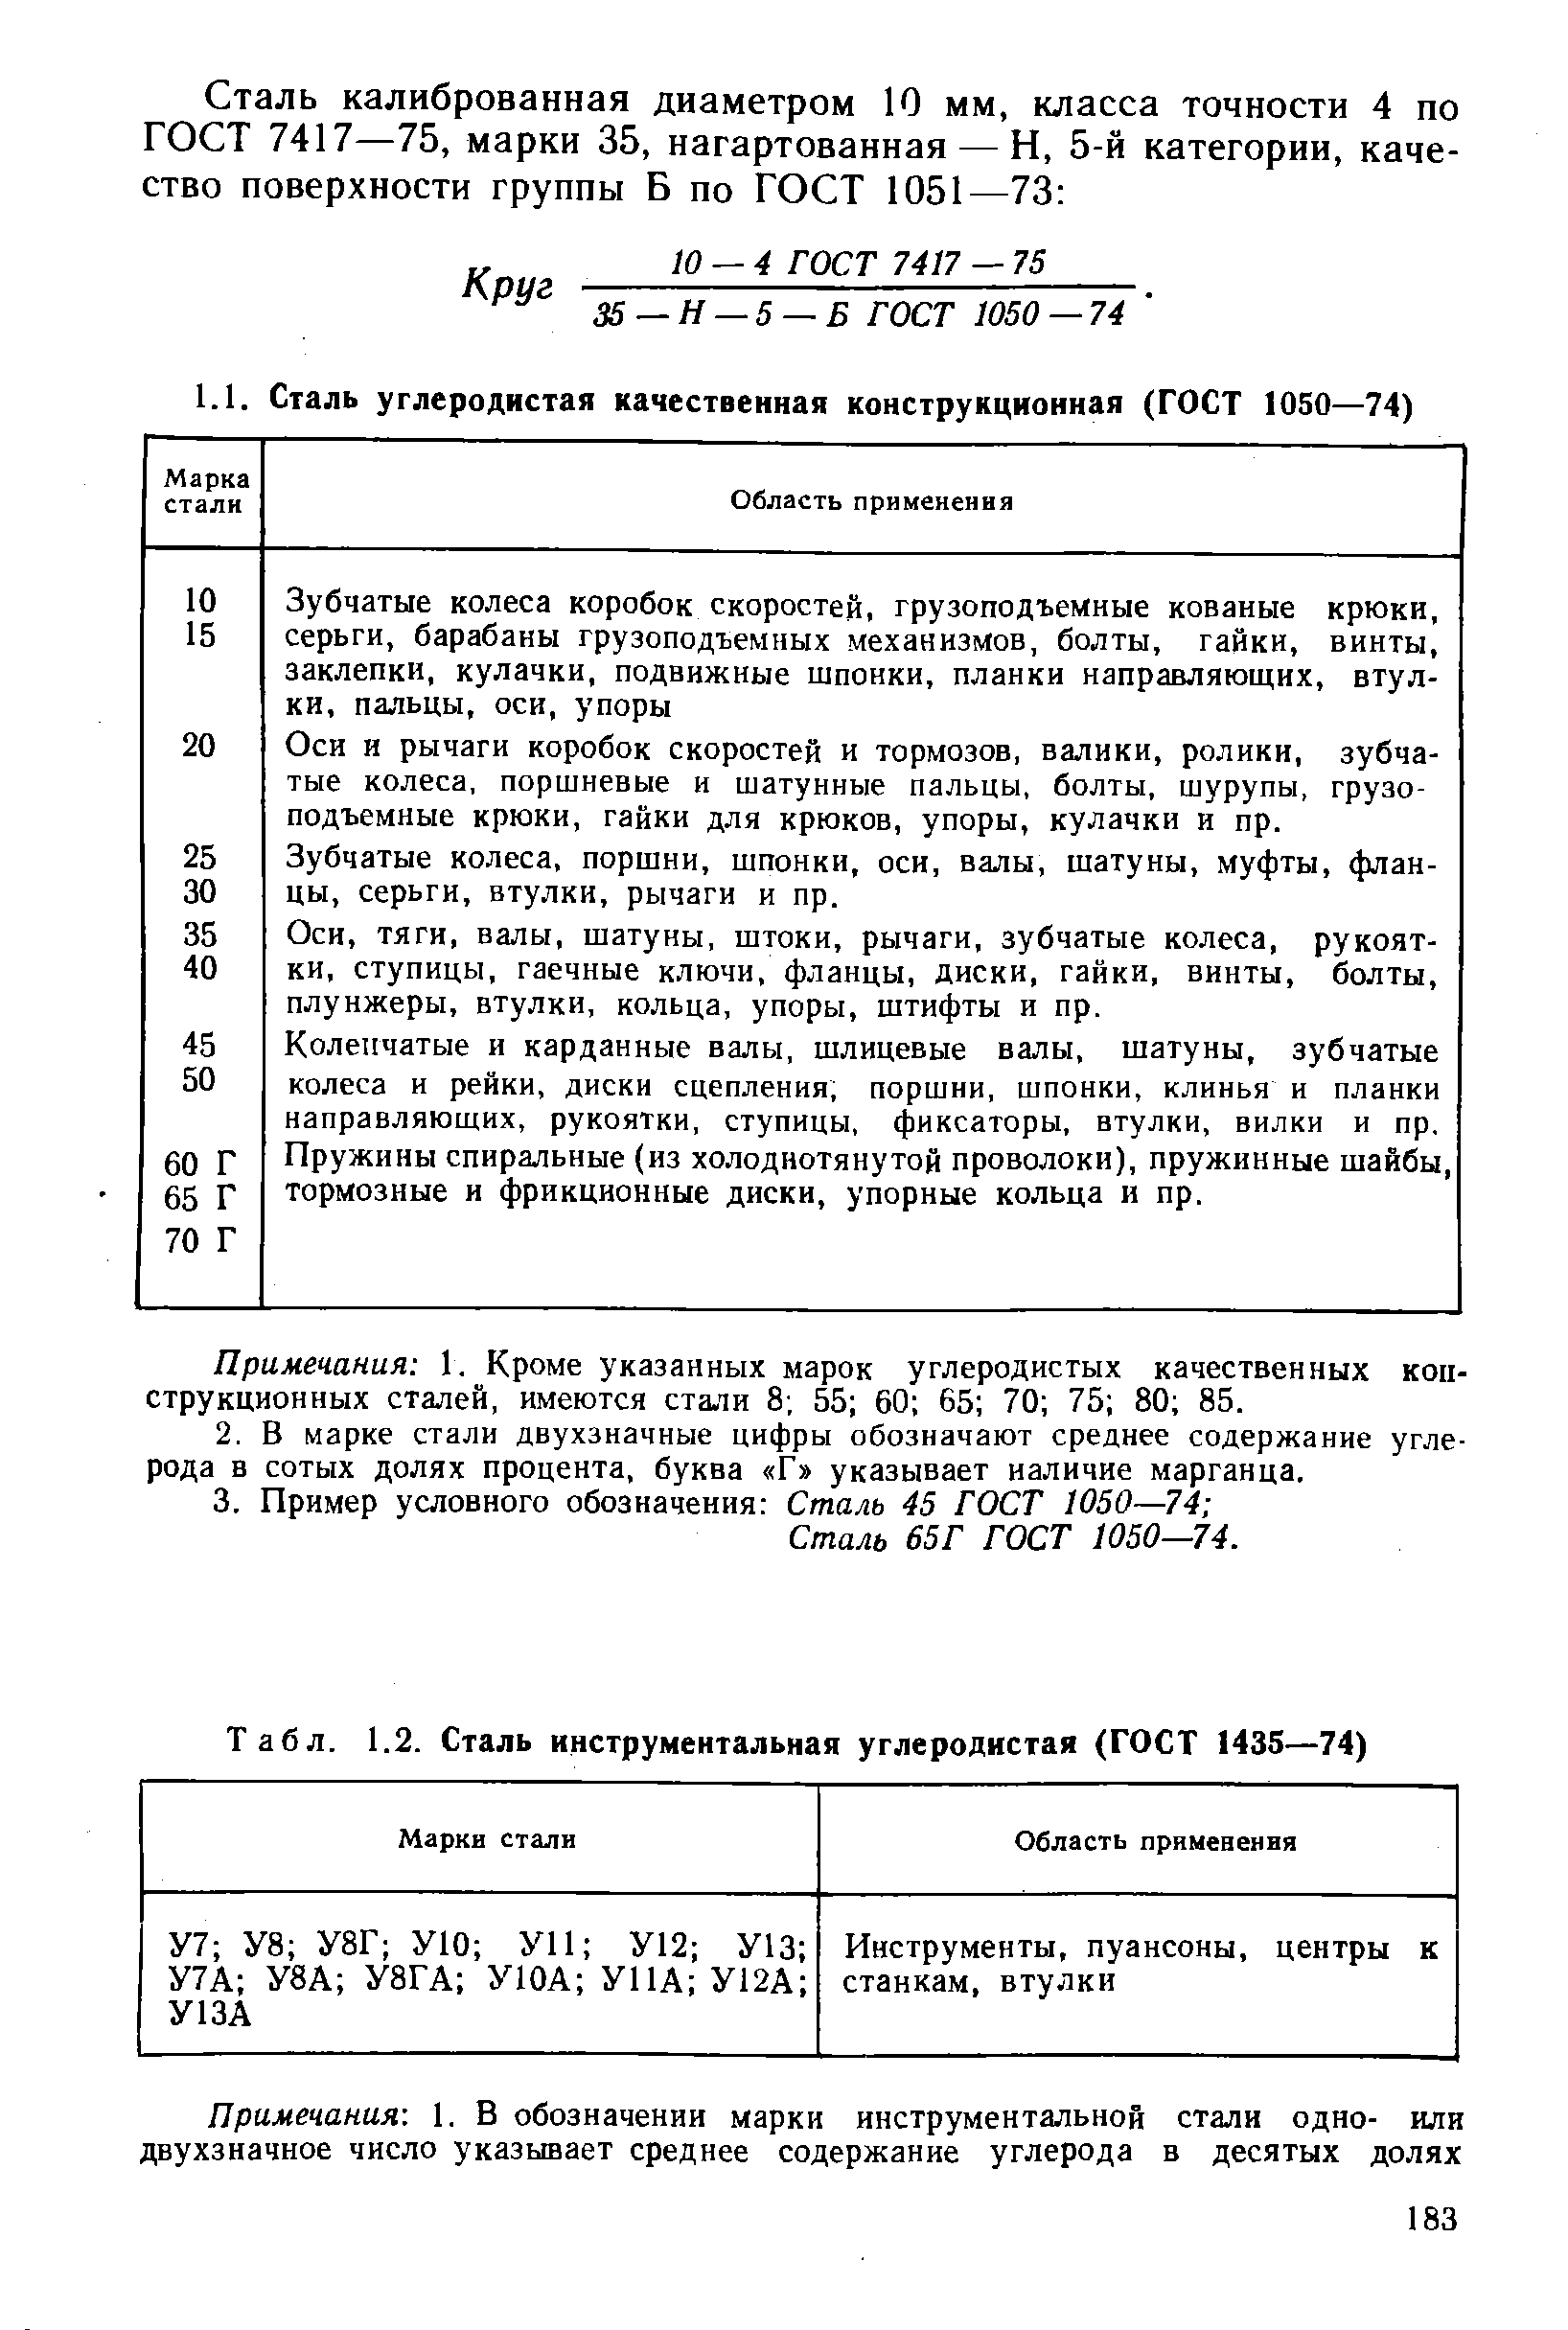 Табл. 1.2. Сталь инструментальная углеродистая (ГОСТ 1435—74)
